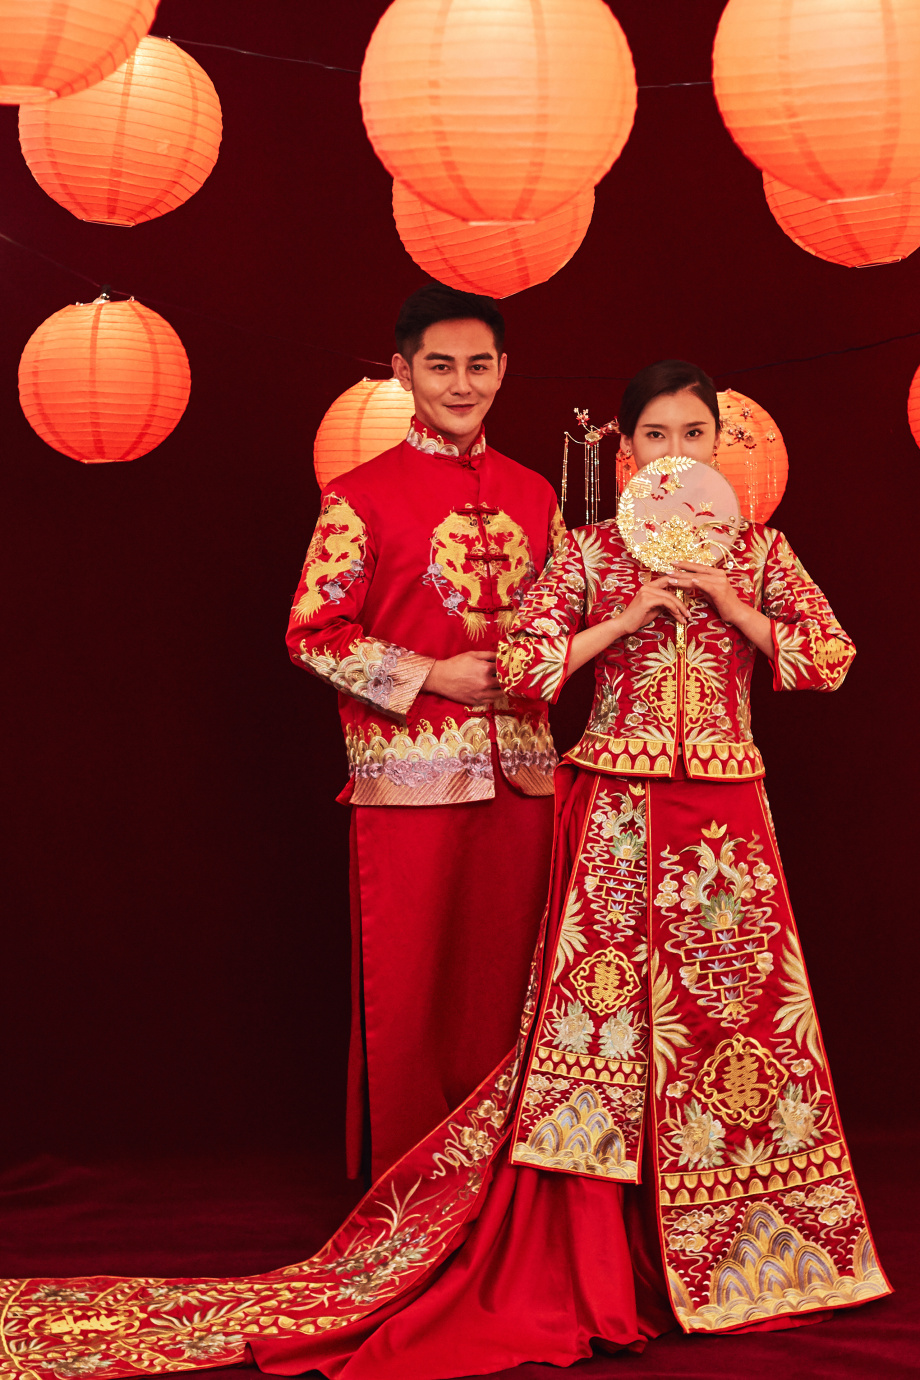 Phong cách Trung Quốc luôn là nguồn cảm hứng vô tận cho thế giới thời trang. Hãy để chúng tôi dẫn bạn vào thế giới phong cách Trung Quốc đầy màu sắc, phong phú và đa dạng. Qua bức ảnh liên quan, bạn sẽ cảm nhận được nét đẹp văn hoá và sự độc đáo của phong cách này.